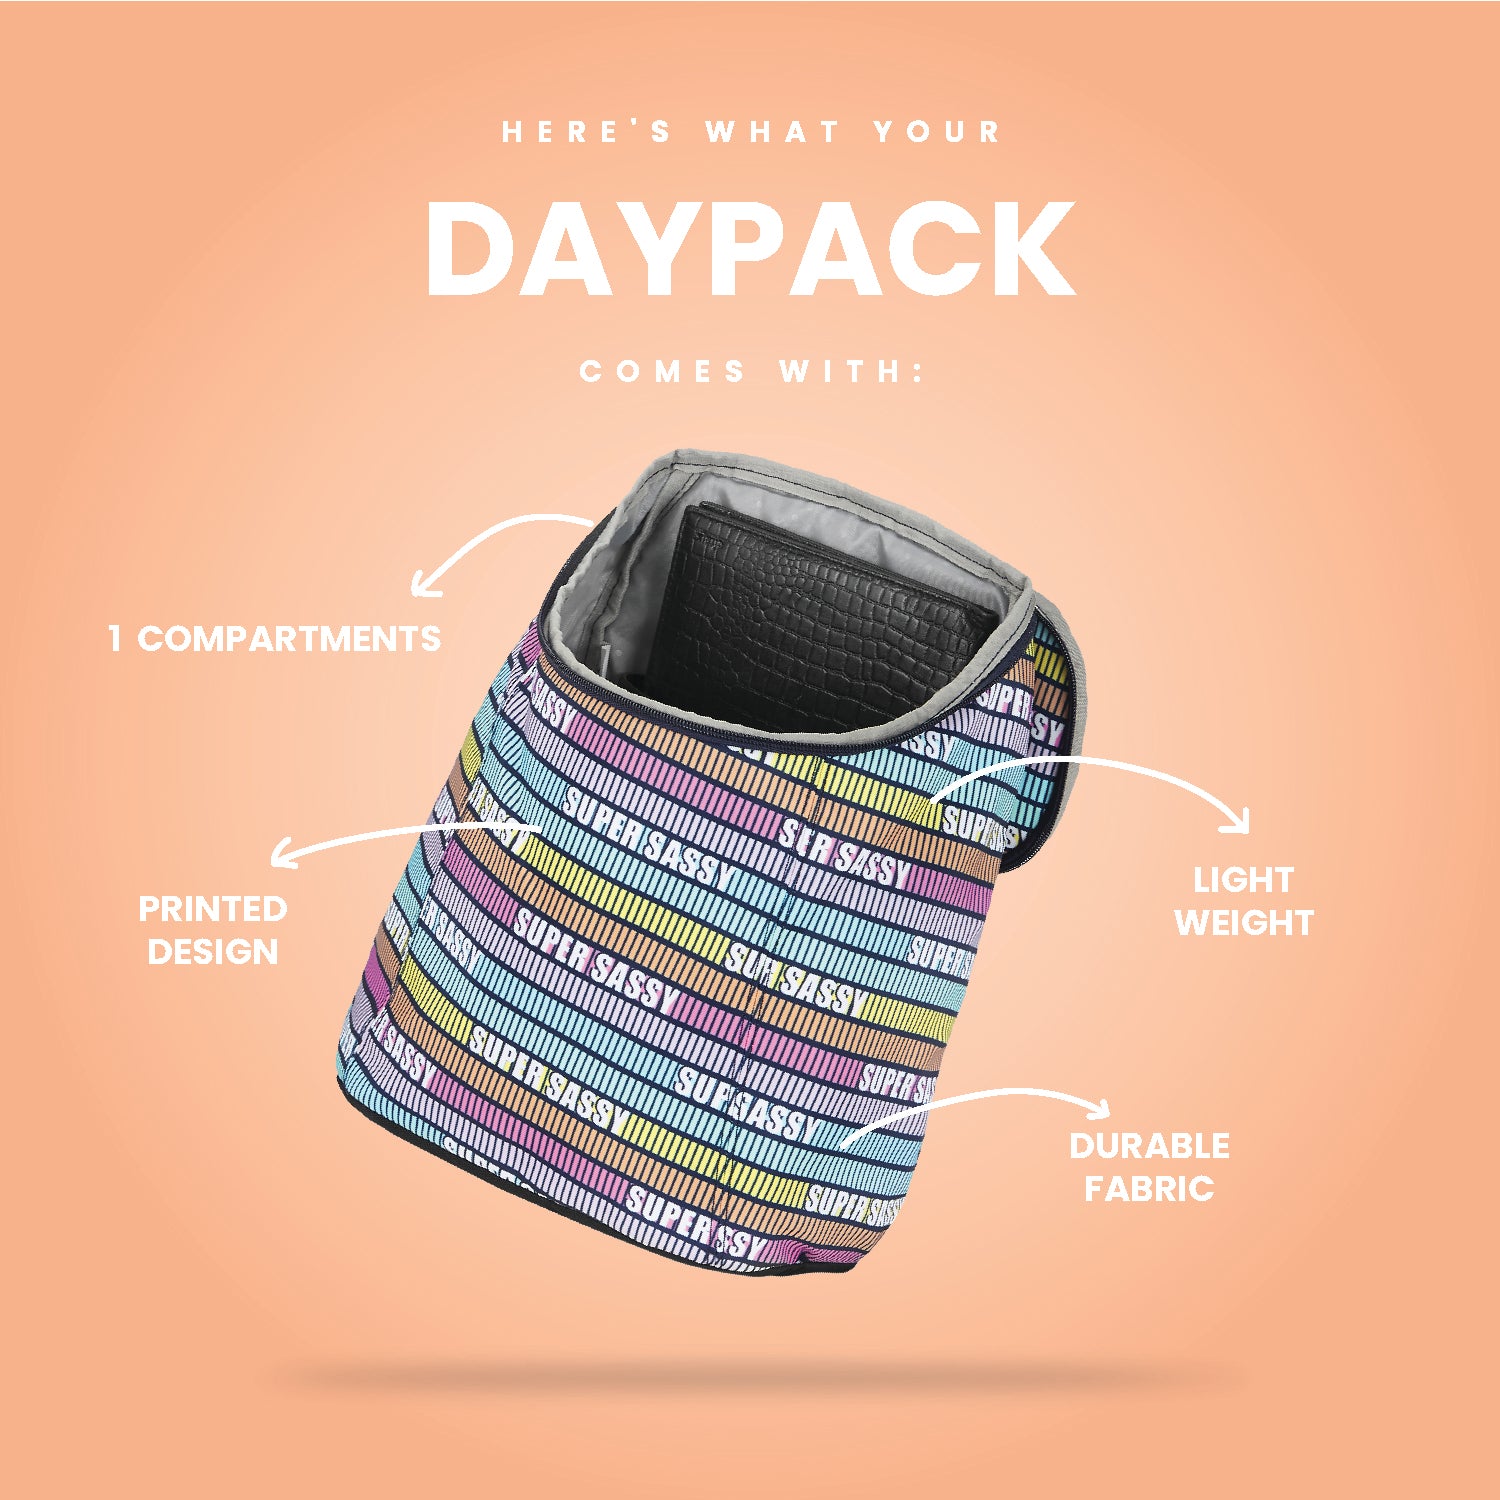 Super Sassy Small Daypack - Multicolor